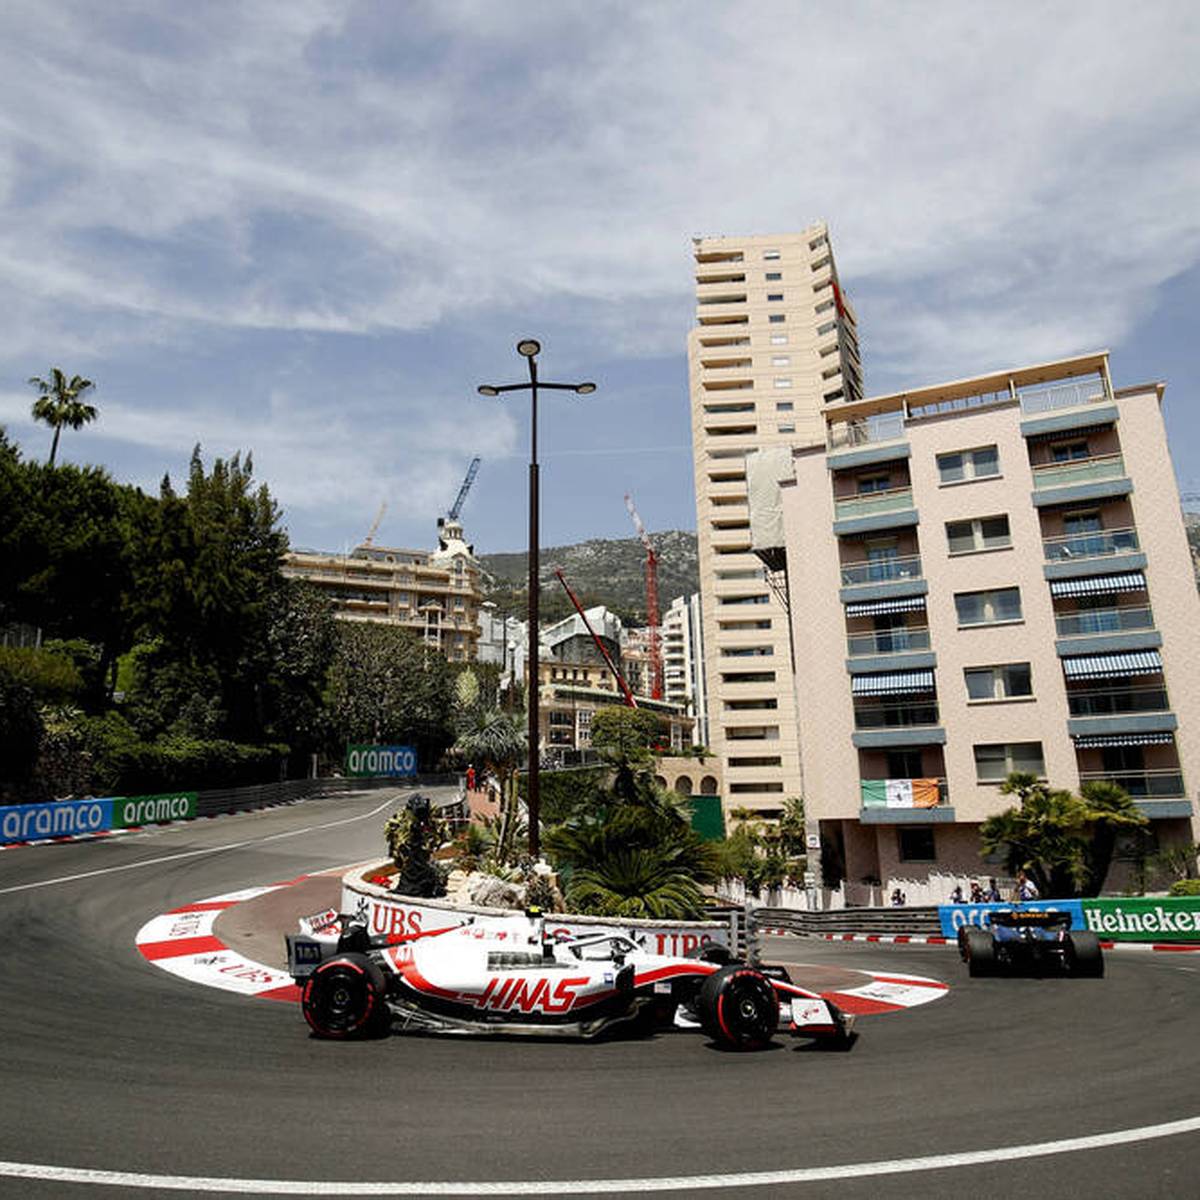 Schumacher enttäuscht in Monaco - Vettel stark